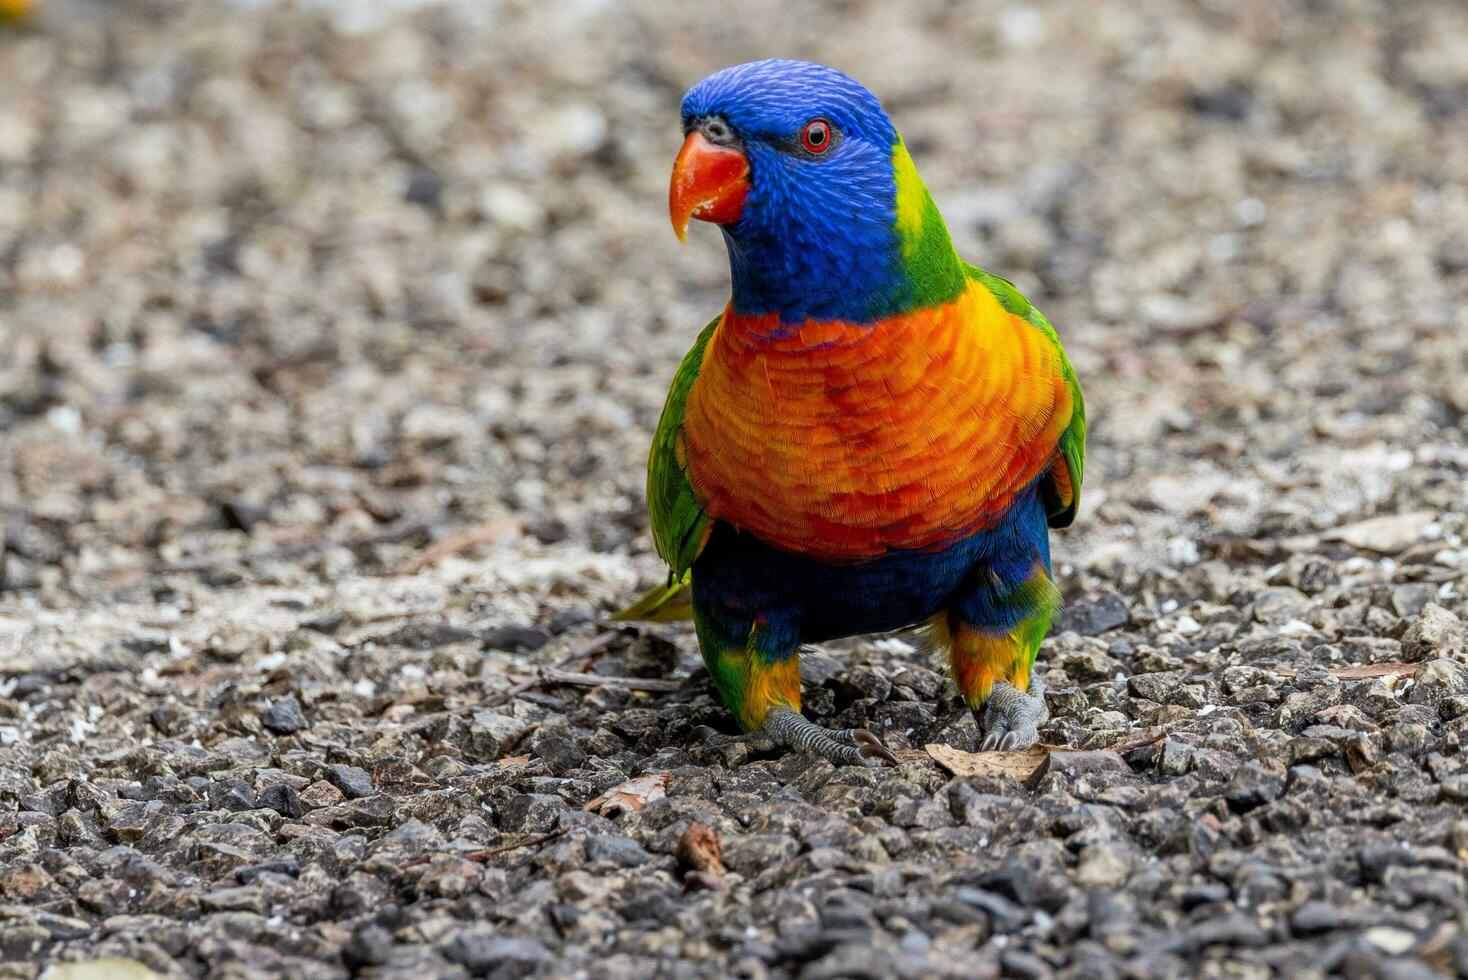 Rainbow Lorikeet in Australia photo